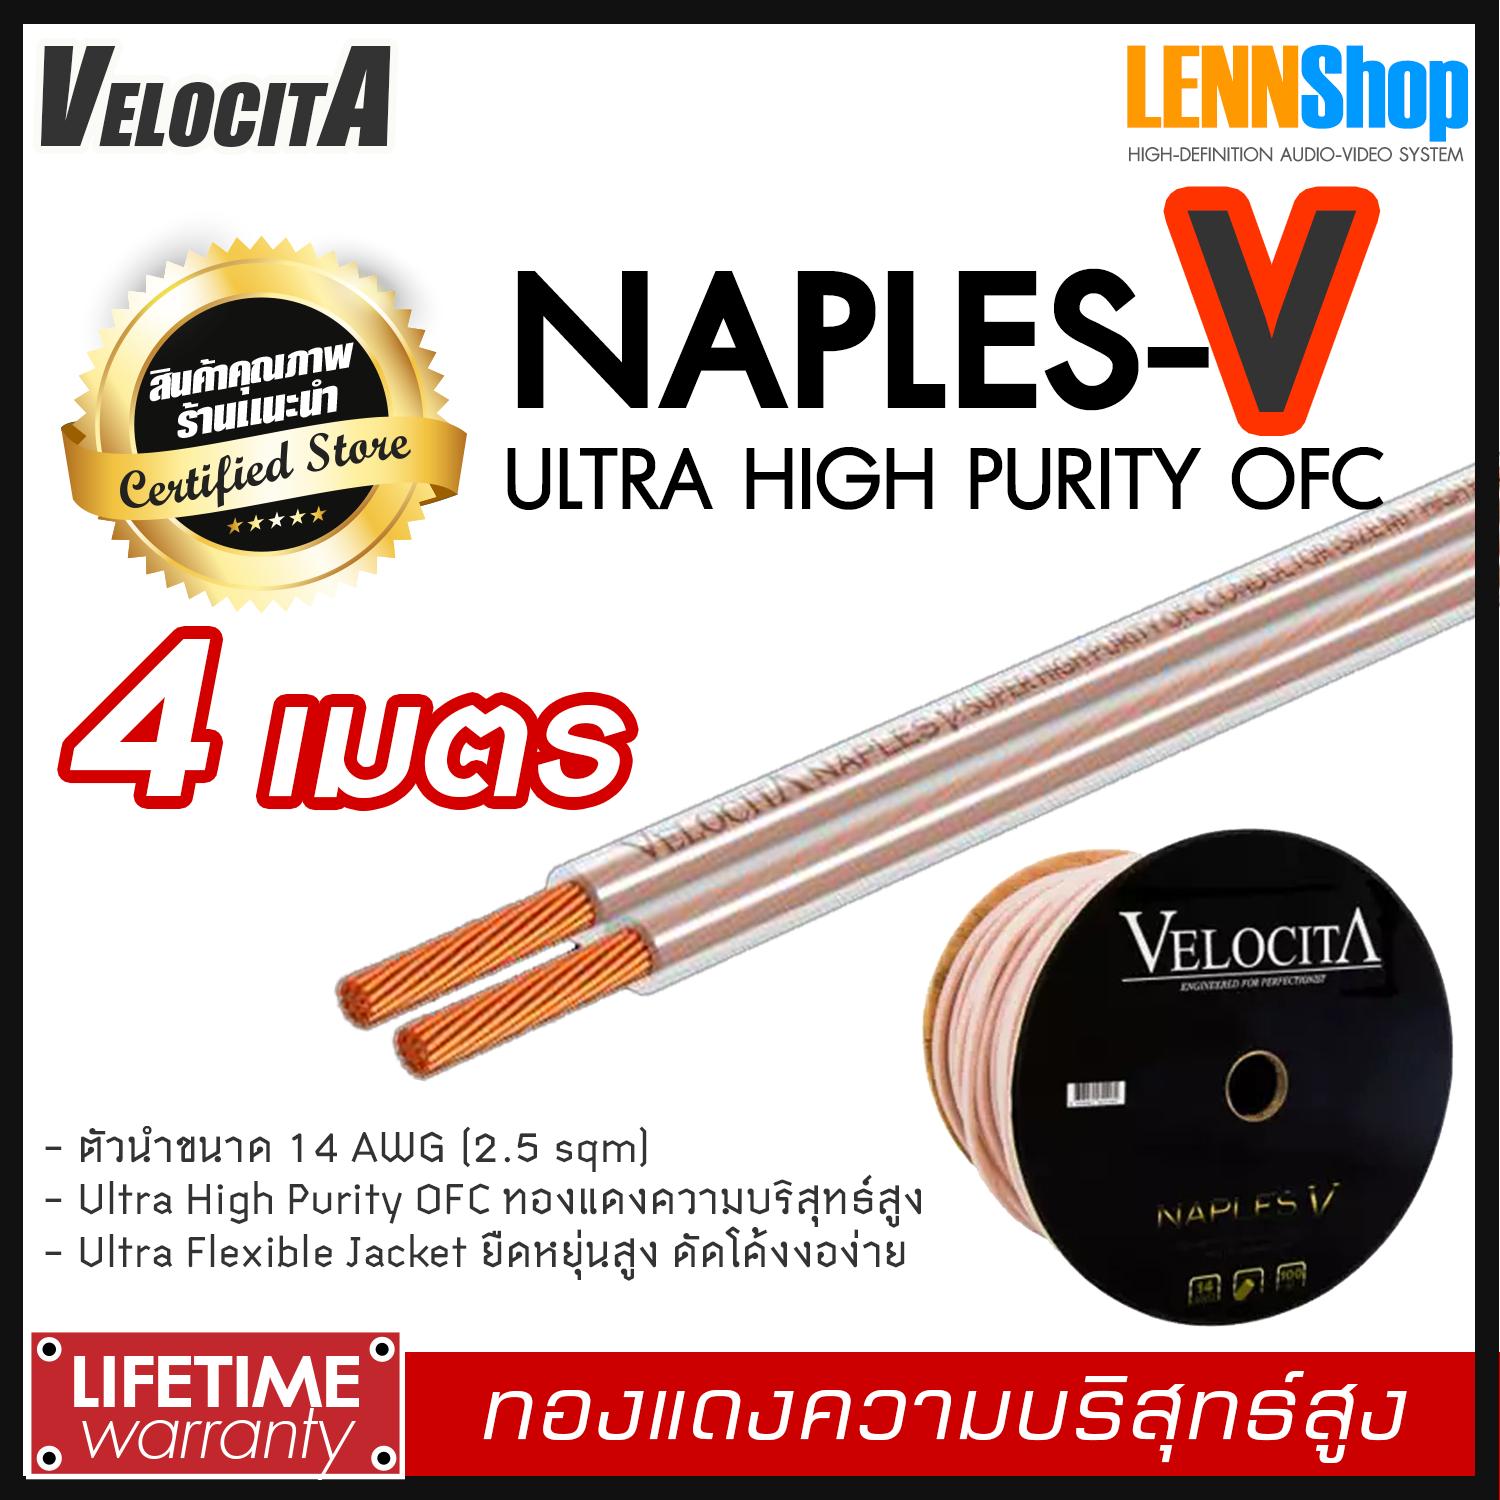 VELOCITA : NAPLES V สายลำโพง Ultra High Purity OFC ความบริสุทธ์สูง ความยาว ตั้งแต่ 1 - 100 เมตร เลือกได้หลายขนาด สินค้าของแท้ 100% จากตัวแทนจำหน่ายอย่างเป็นทางการ จำหน่ายโดย LENNSHOP / Velocita Naple V / naple V สี 4m สี 4m